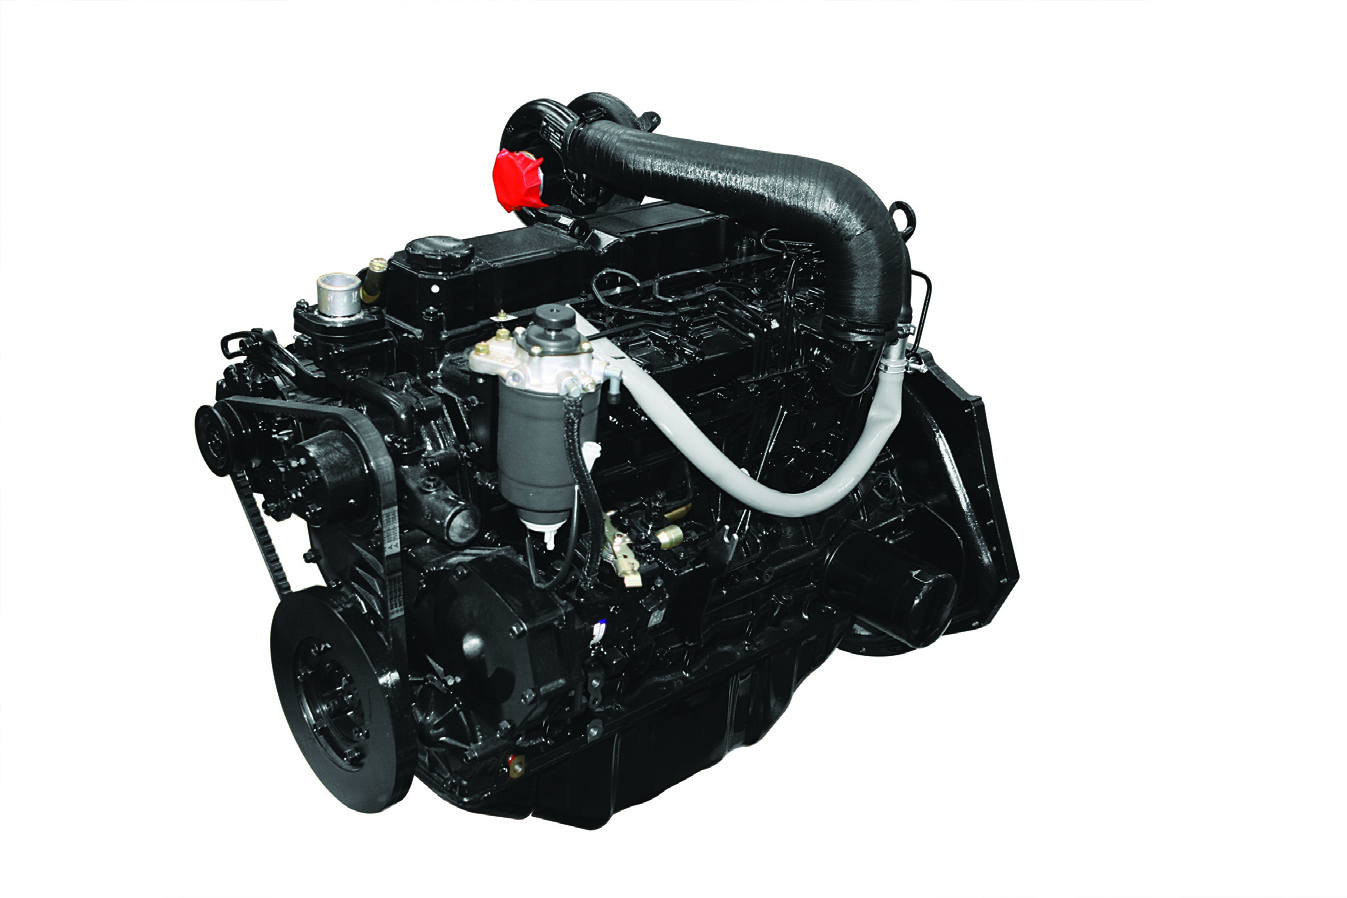 Alta potencia y rendimiento Potente motor Motor Mitsubishi SS-T El motor turbo alimentado de seis cilindros está fabricado para proporcionar potencia, fiabilidad y ahorro.